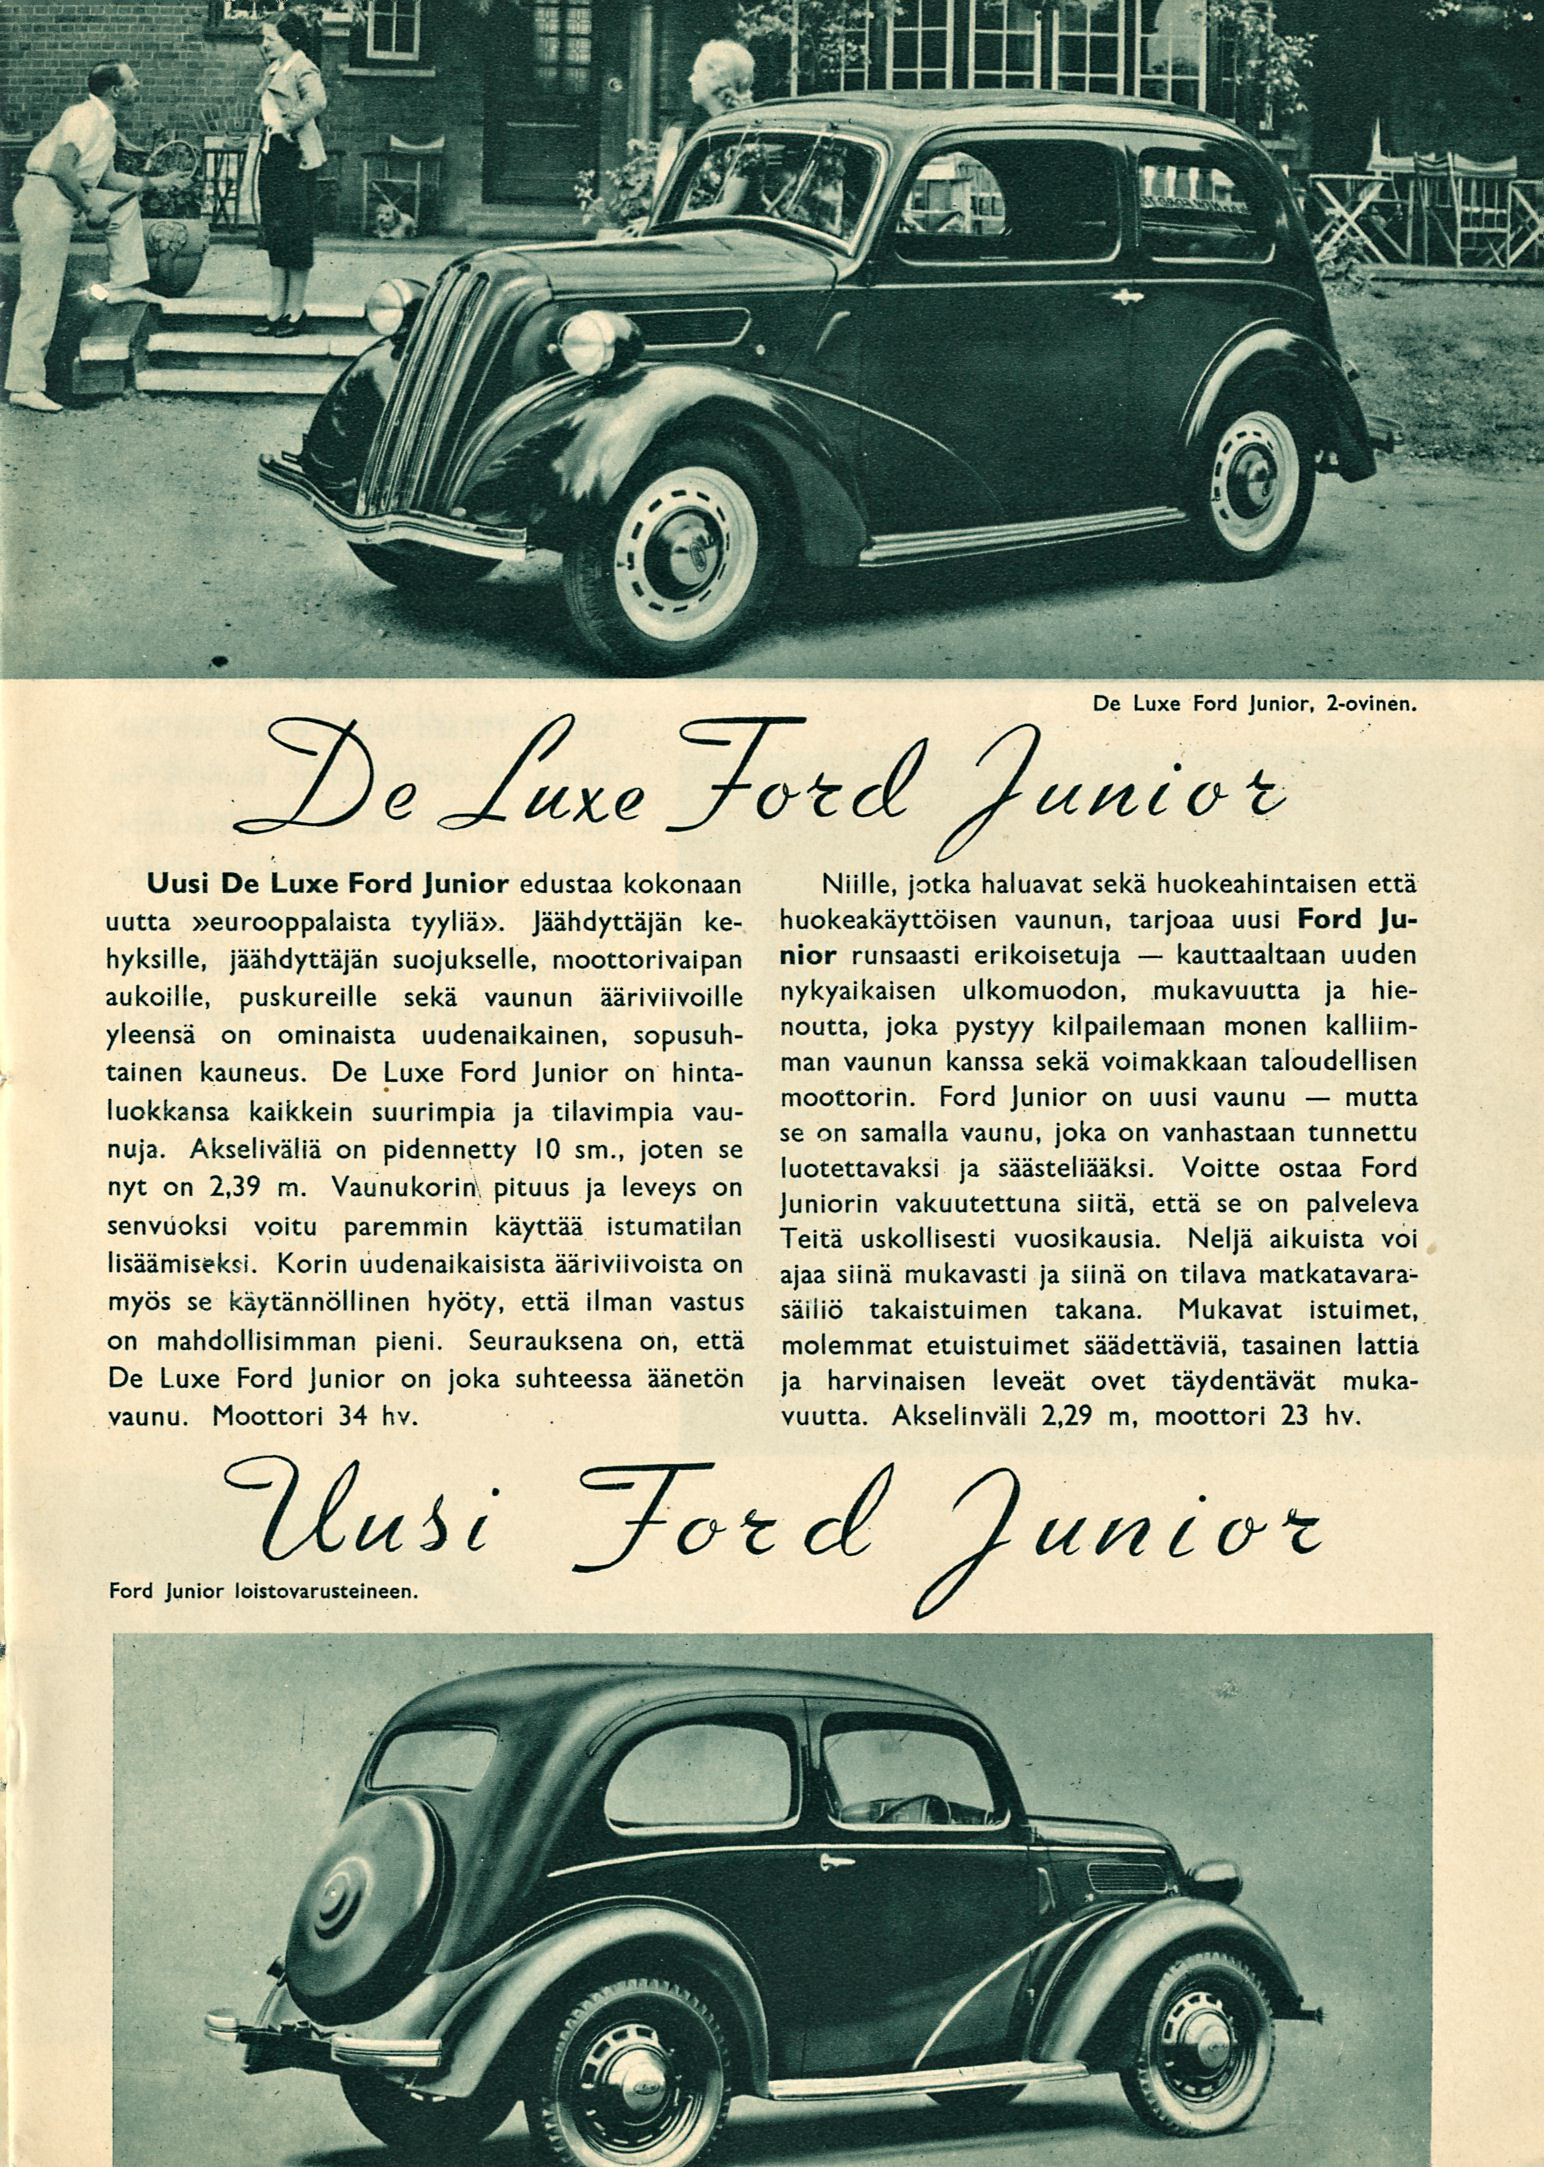 kauttaaltaan De Luxe Ford Junior, 2-ovinen. jro-tcd Junca t- Uusi De Luxe Ford junior edustaa kokonaan uutta»eurooppalaista tyyliä».